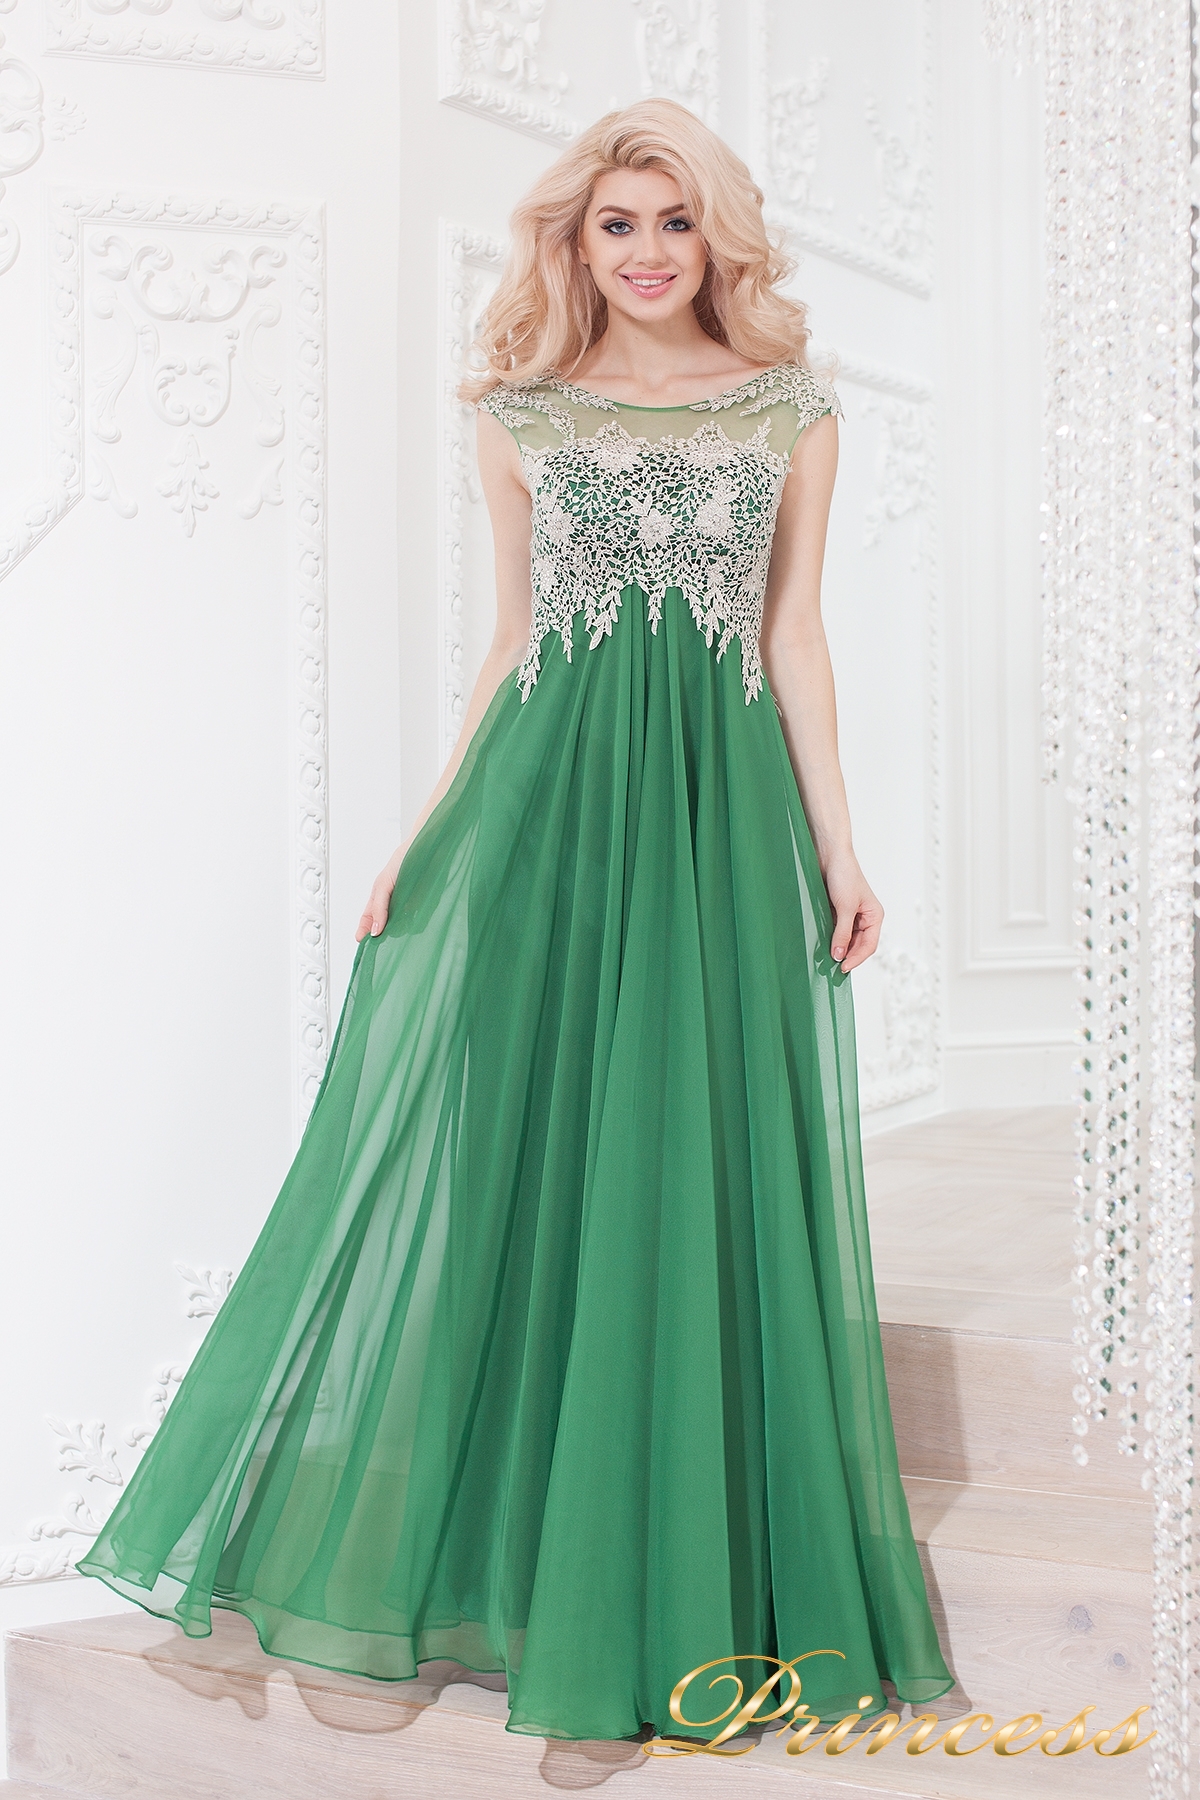 Купить вечернее платье 4675 green зеленого цвета по цене 31500 руб. в Москве в интернет-магазине Принцесса